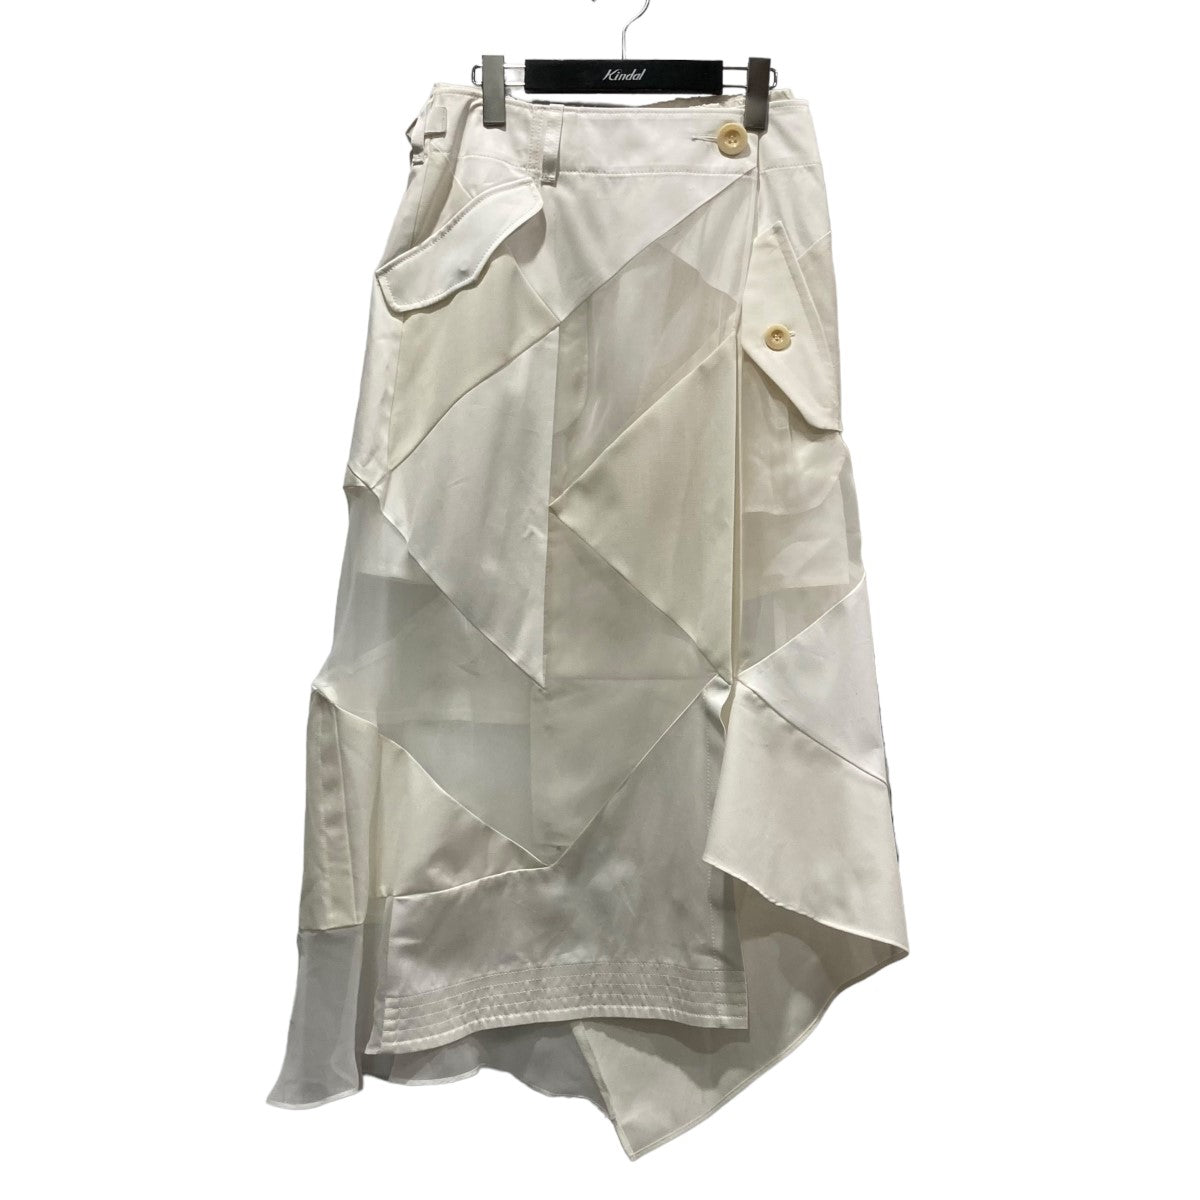 sacai(サカイ) 21SSHank Willis Thomas Solid MIX Skirtドッキングスカート21-05418 ホワイト サイズ:1 レディース スカート 中古・古着